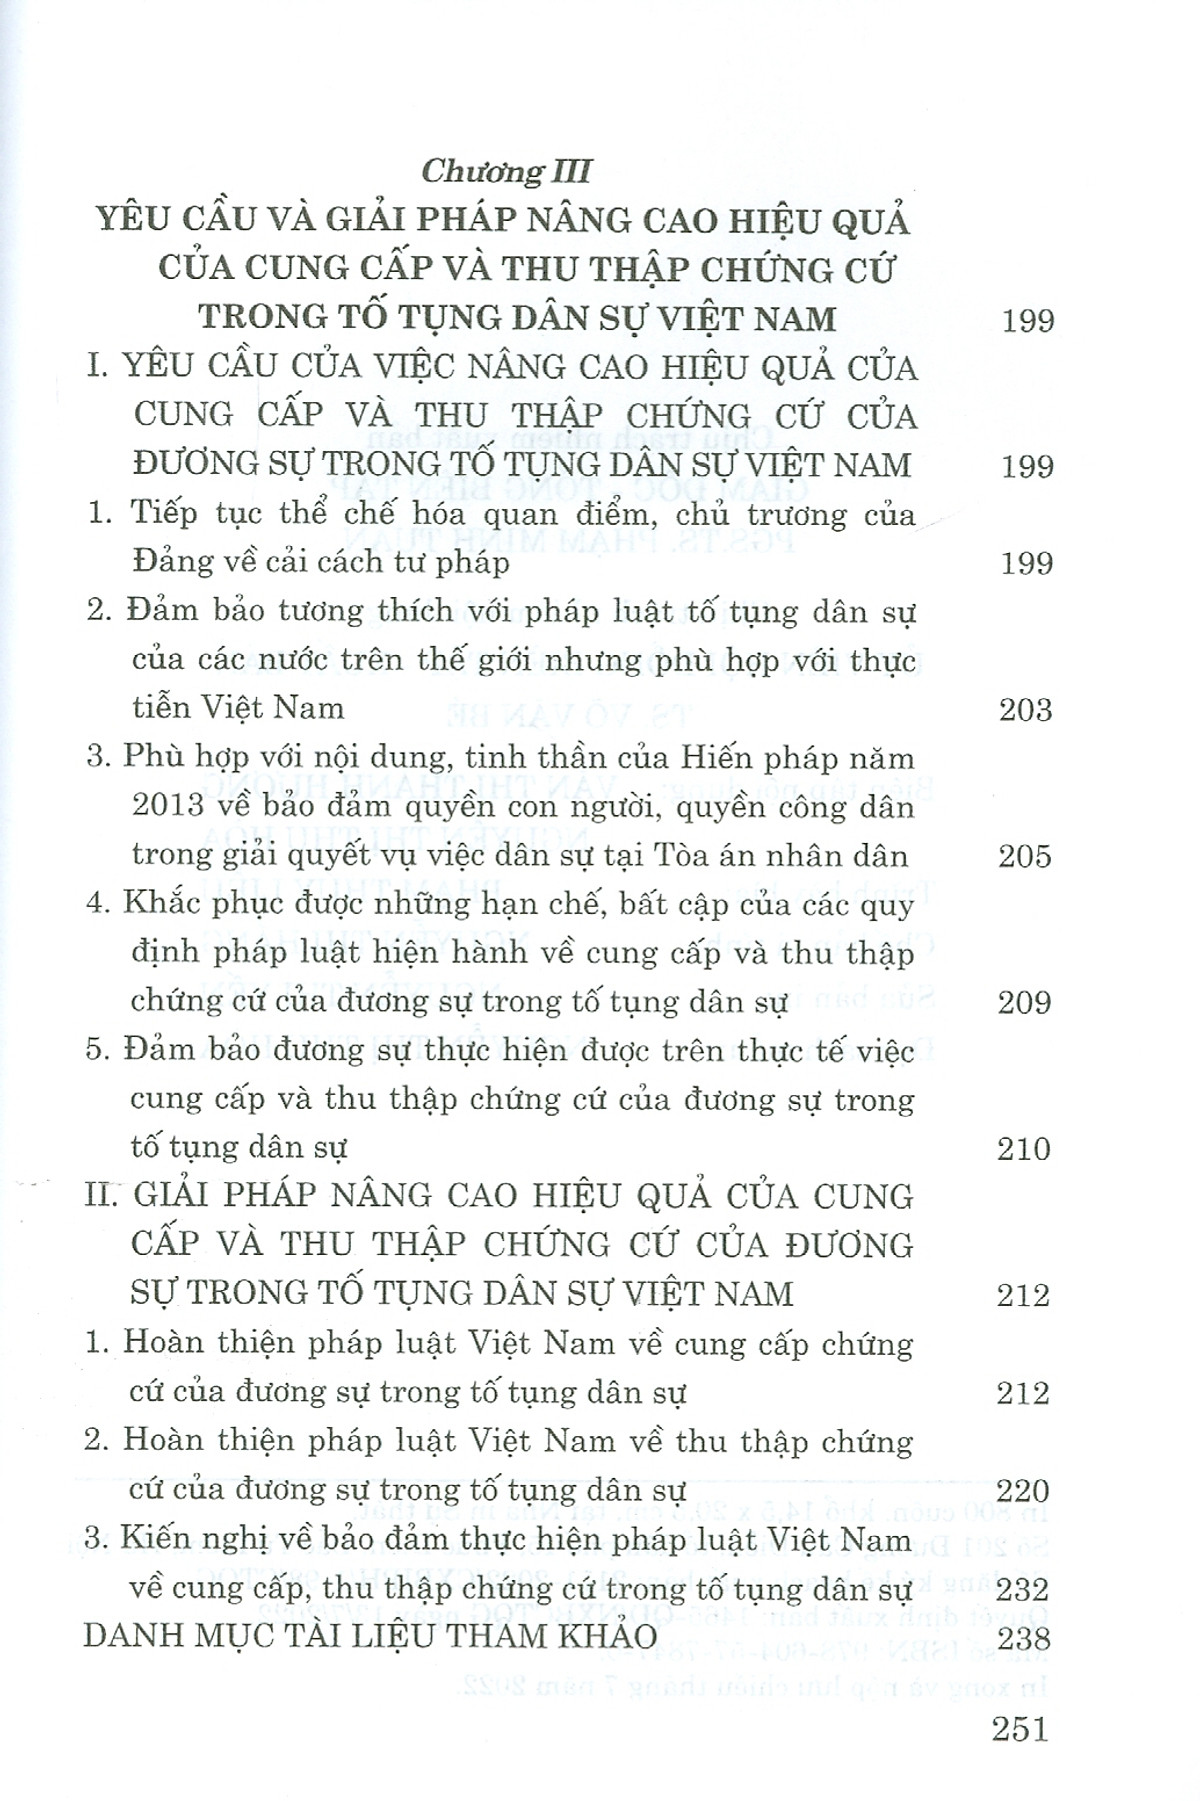 Cung cấp, thu thập chứng cứ của đương sự trong tố tụng dân sự Việt Nam